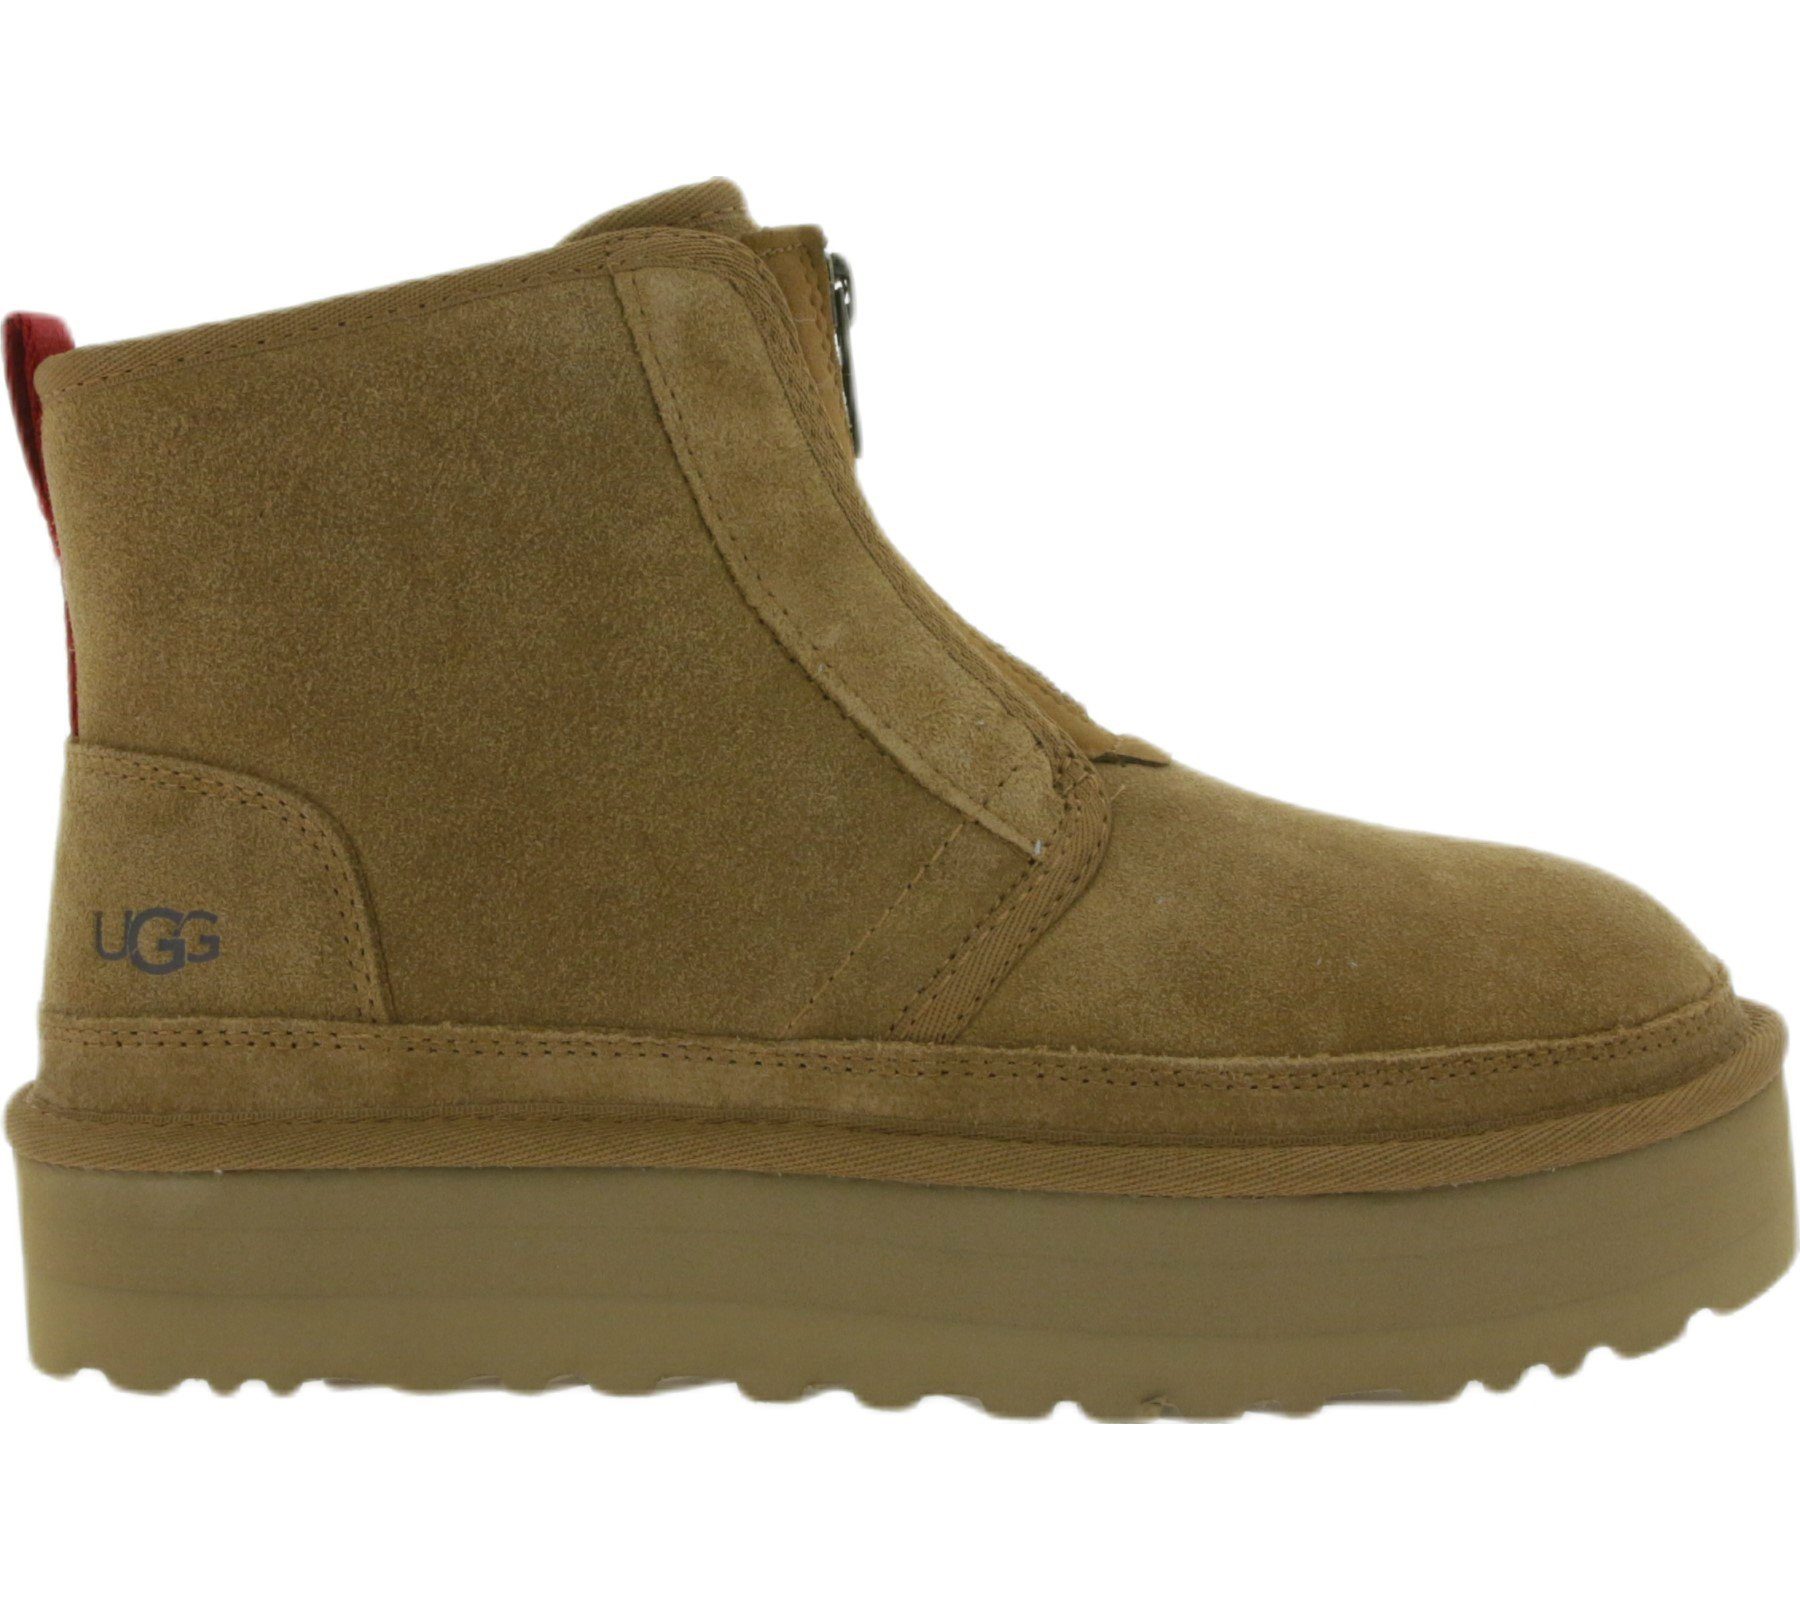 UGG »UGG Australia Damen Plateau-Stiefel Echtleder-Boots W Neumel Platform  Zip Boots Braun« Stiefel online kaufen | OTTO